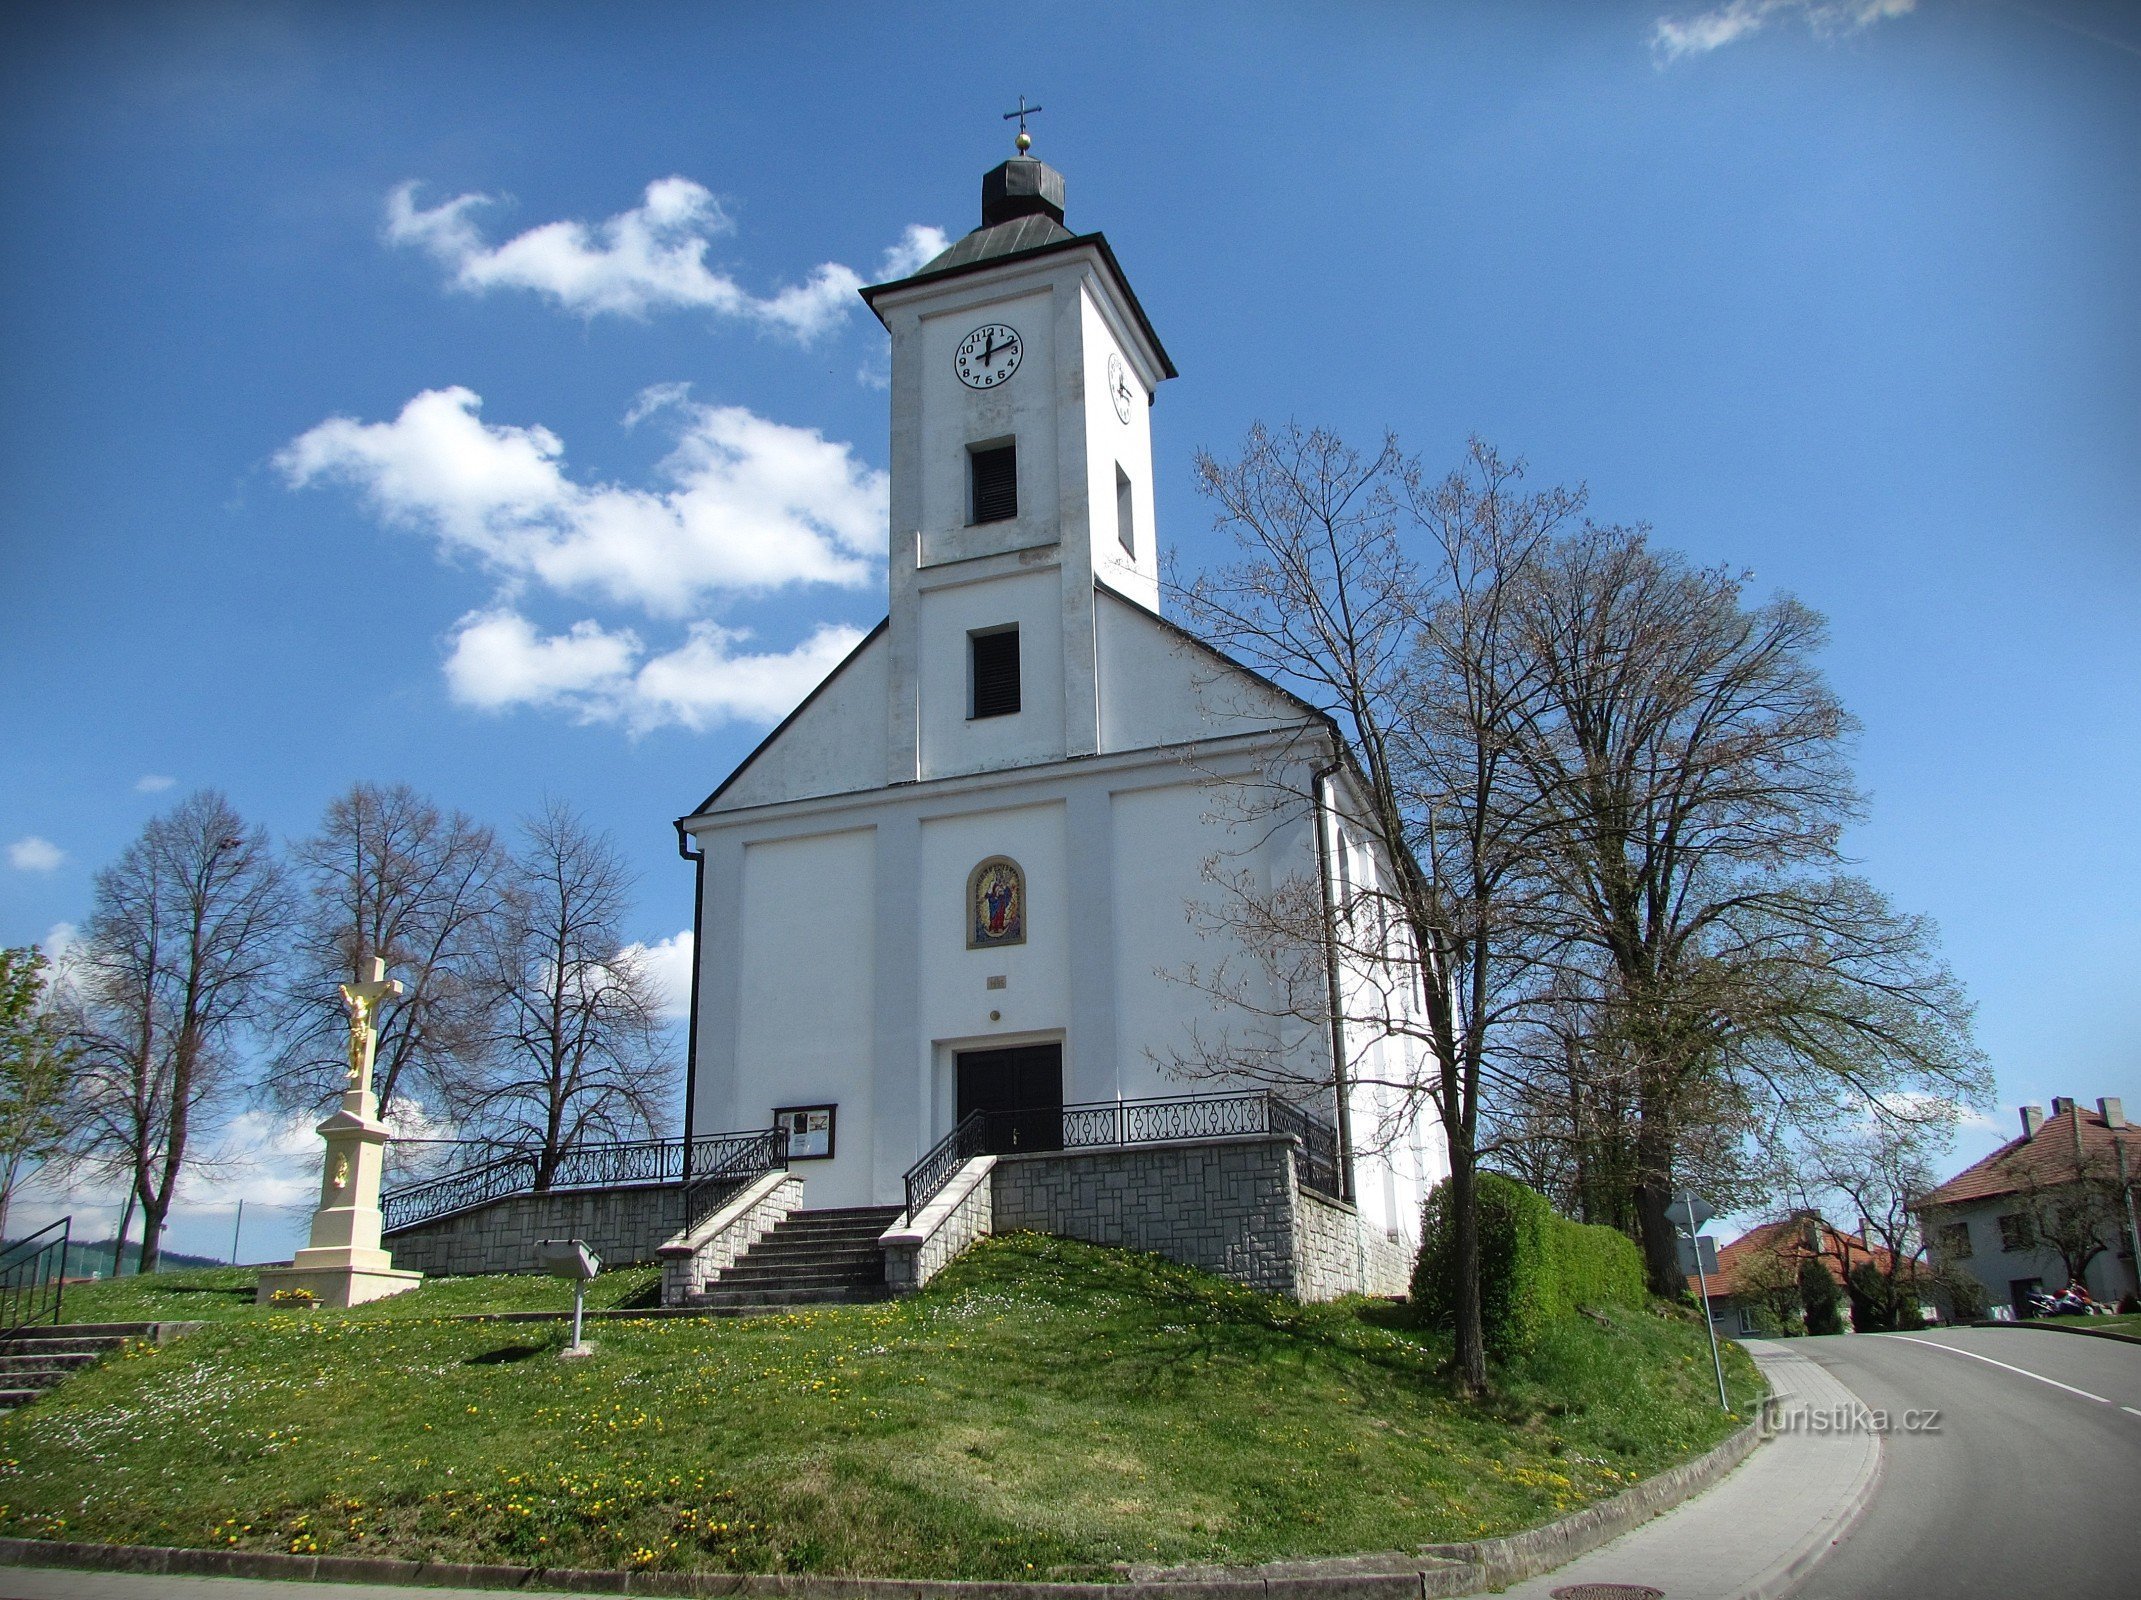 Slopné - église Saint-Roch